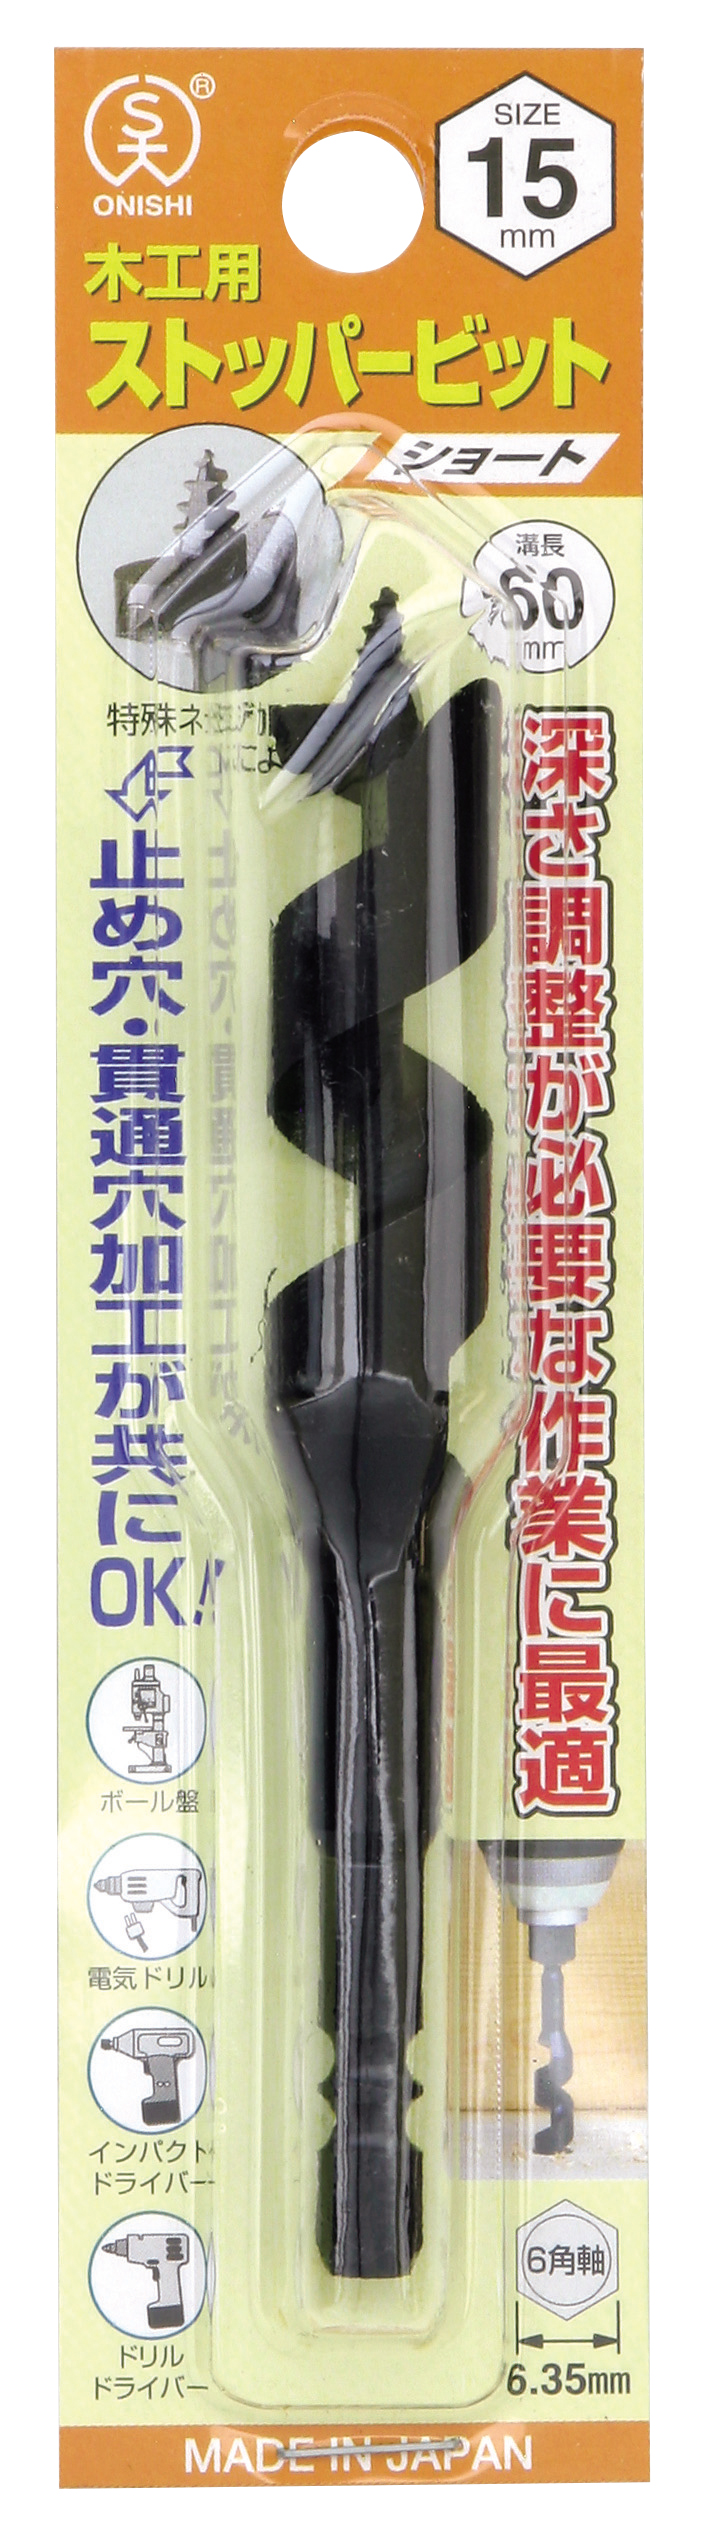 ニチアス 厚手ラギング用ガラスクロスチューブ (インサルテックス(R)) φ10mm 3-2466-01 - 5